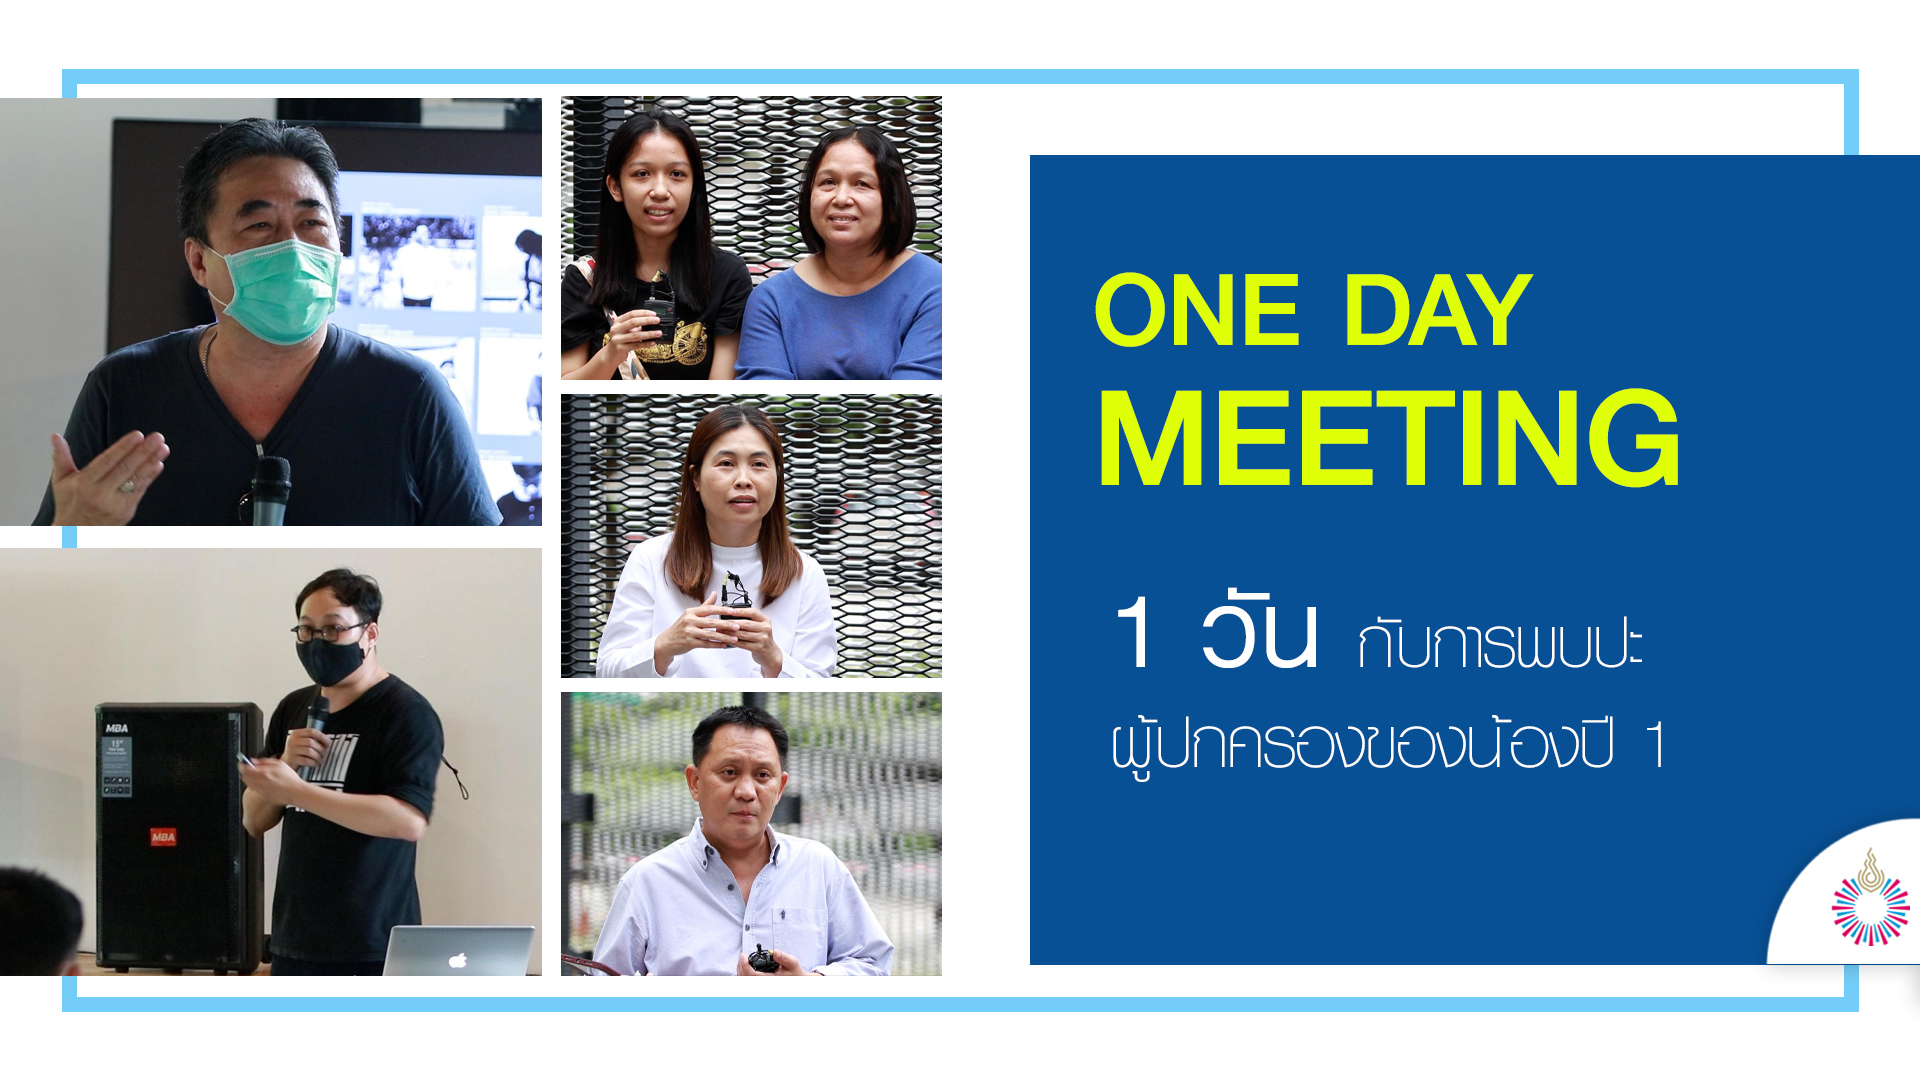 One day meeting | วันกับการพบปะผู้ปกครองของน้องปี 1